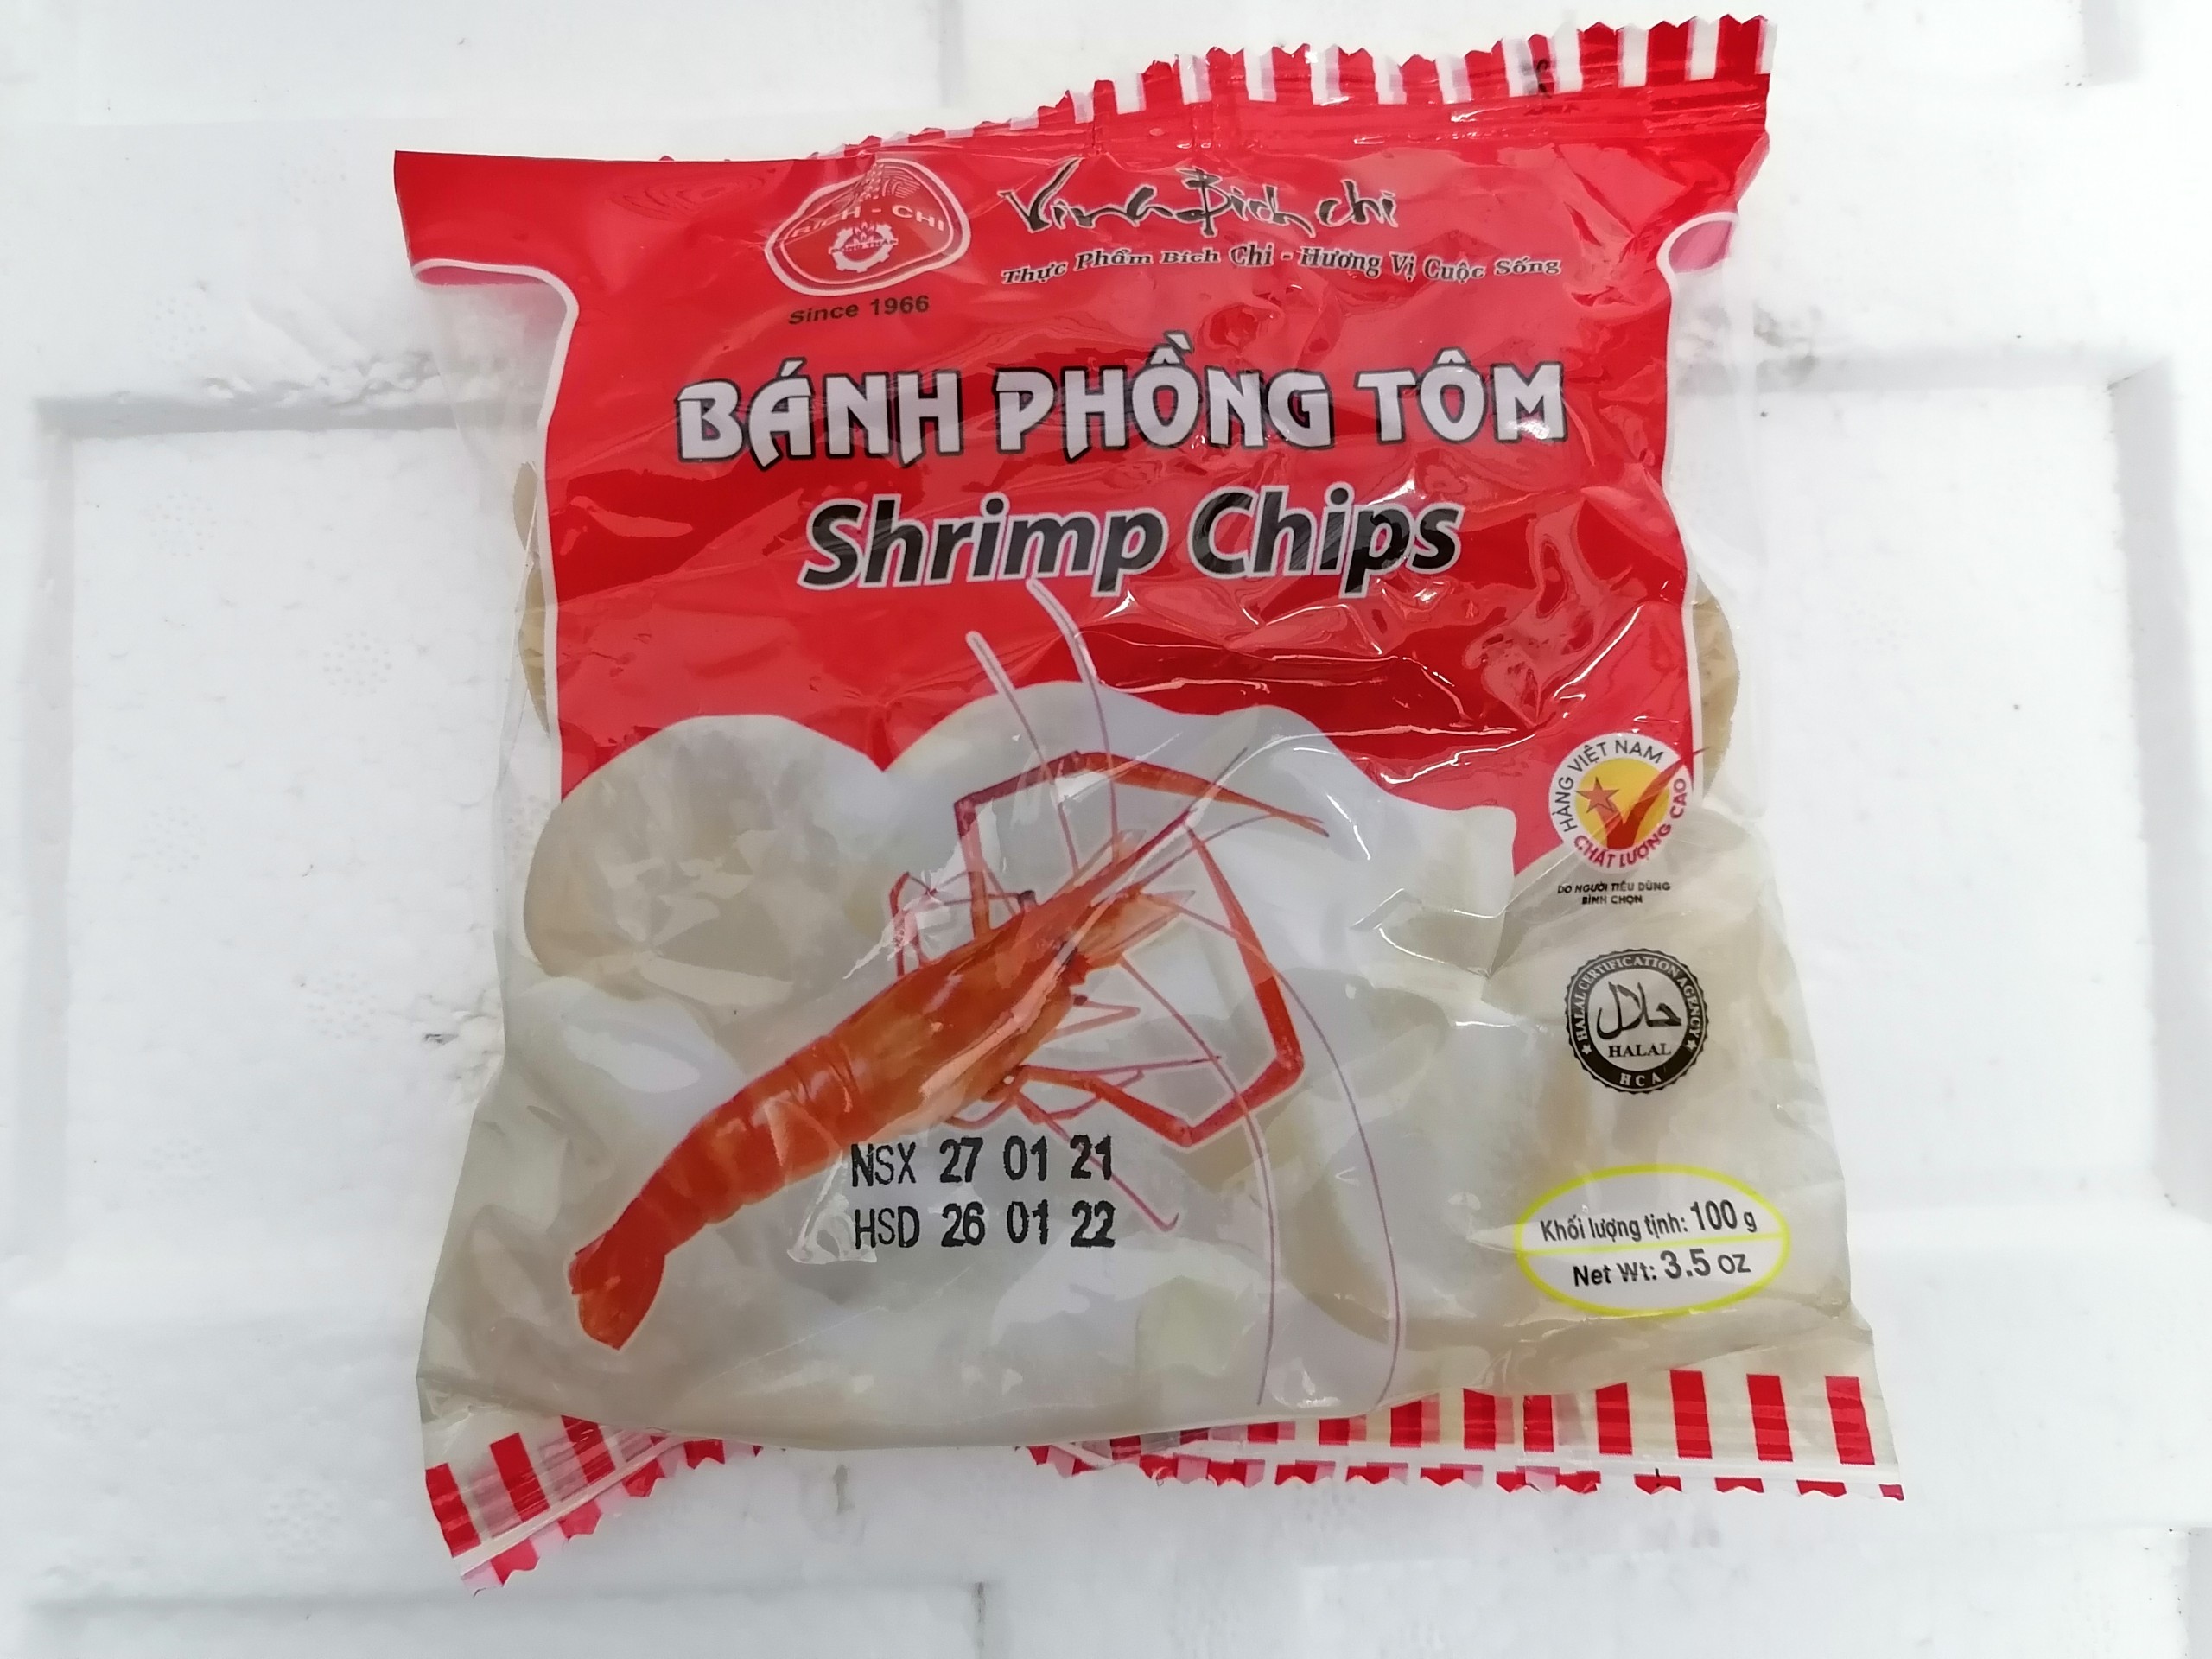 100g BÁNH PHỒNG TÔM VỊ TIÊU VN BÍCH CHI Shrimp Chips halal btn-hk